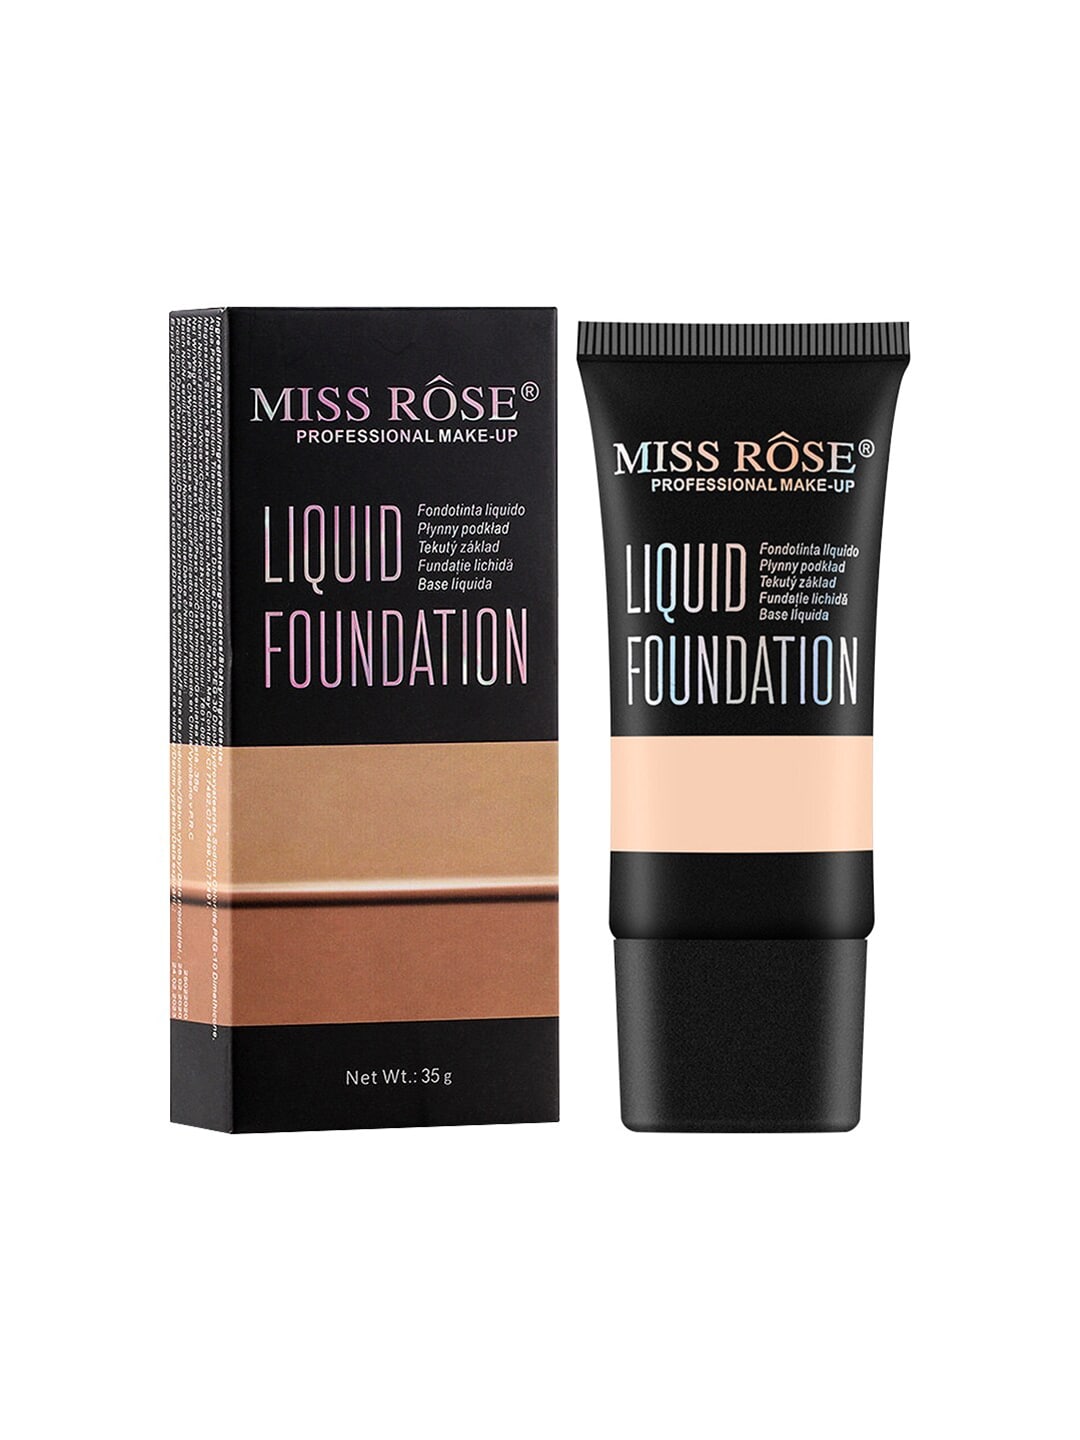 MISS ROSE Matte Finish Liquid Foundation - Beige 02 Price in India